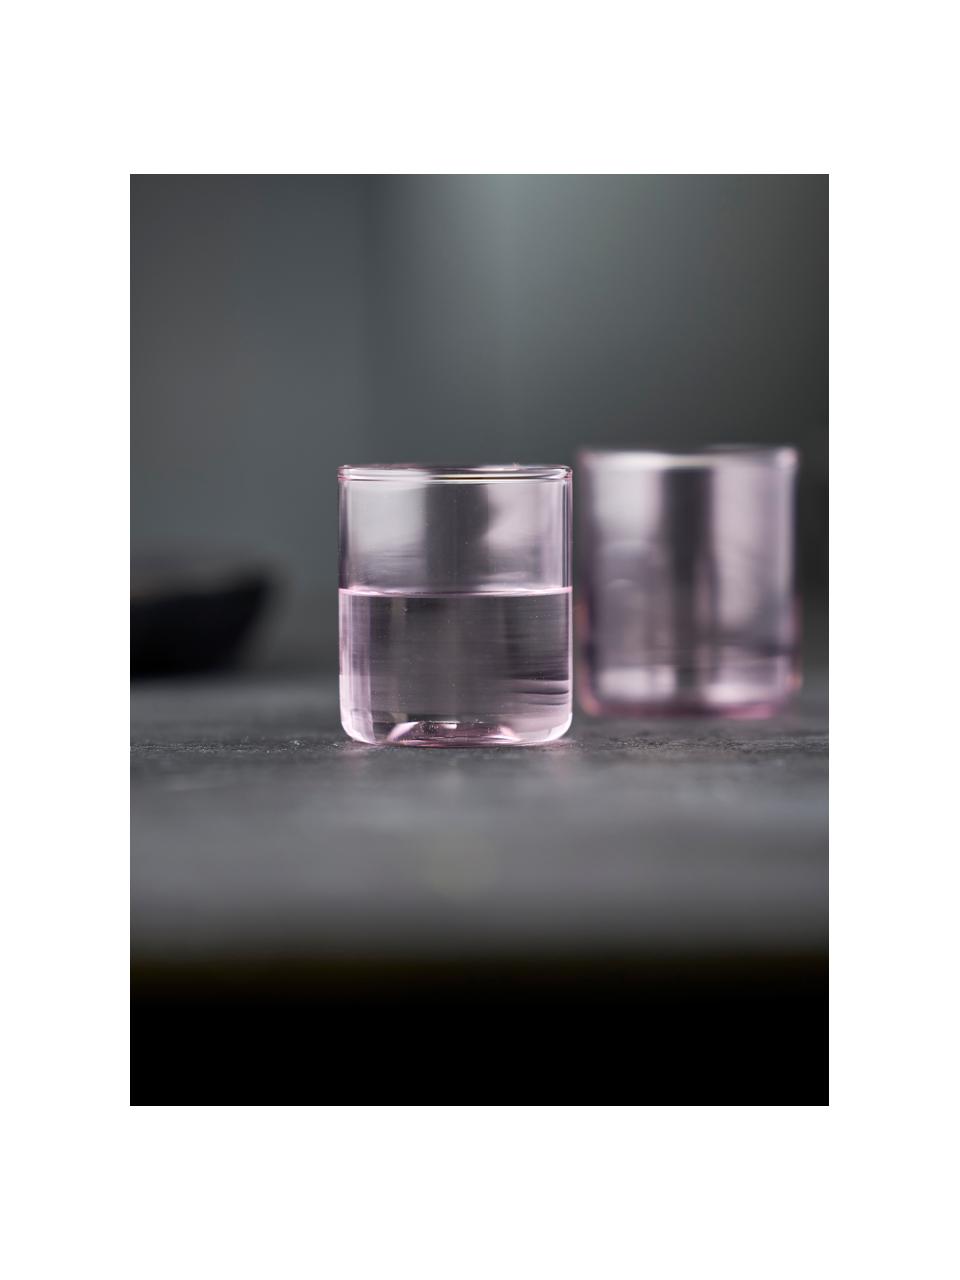 Poháre na shoty Torino, 2 ks, Borosilikátové sklo

Objavte všestrannosť borosilikátového skla pre váš domov! Borosilikátové sklo je kvalitný, spoľahlivý a robustný materiál. Vyznačuje sa mimoriadnou tepelnou odolnosťou a preto je ideálny pre váš horúci čaj alebo kávu. V porovnaní s klasickým sklom je borosilikátové sklo odolnejšie voči rozbitiu a prasknutiu, a preto je bezpečným spoločníkom vo vašej domácnosti., Svetloružová, priehľadná, Ø 4 x V 5 cm, 60 ml